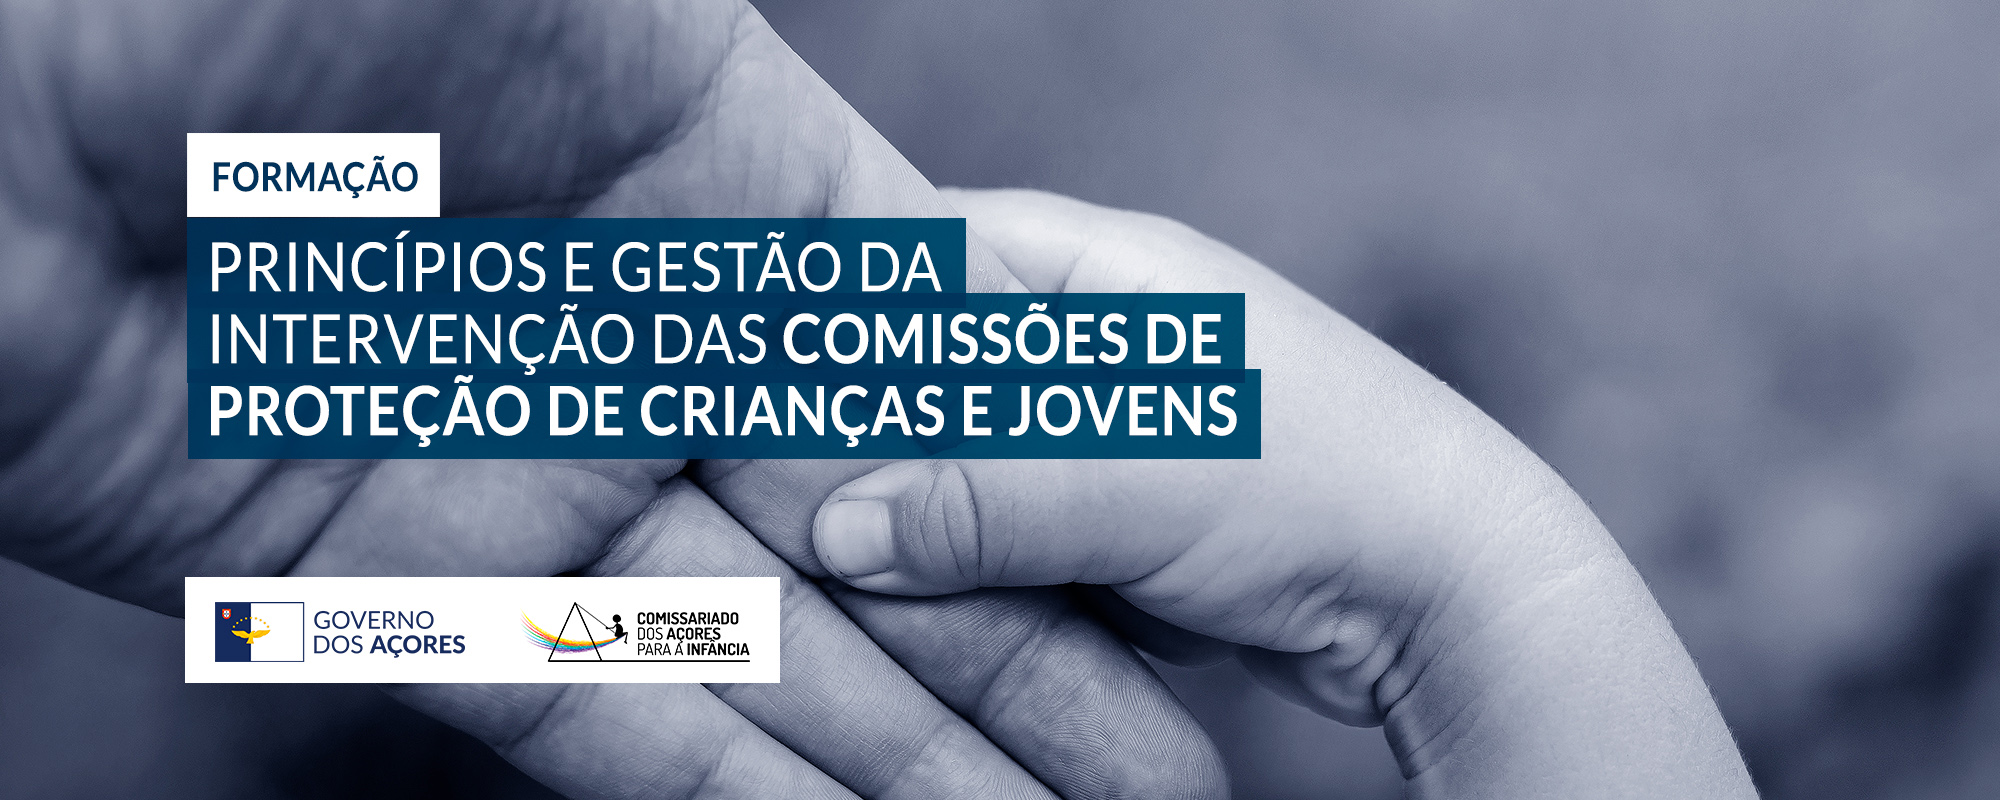 Formação “Princípios e gestão da intervenção das comissões de proteção de crianças e jovens” - cartaz